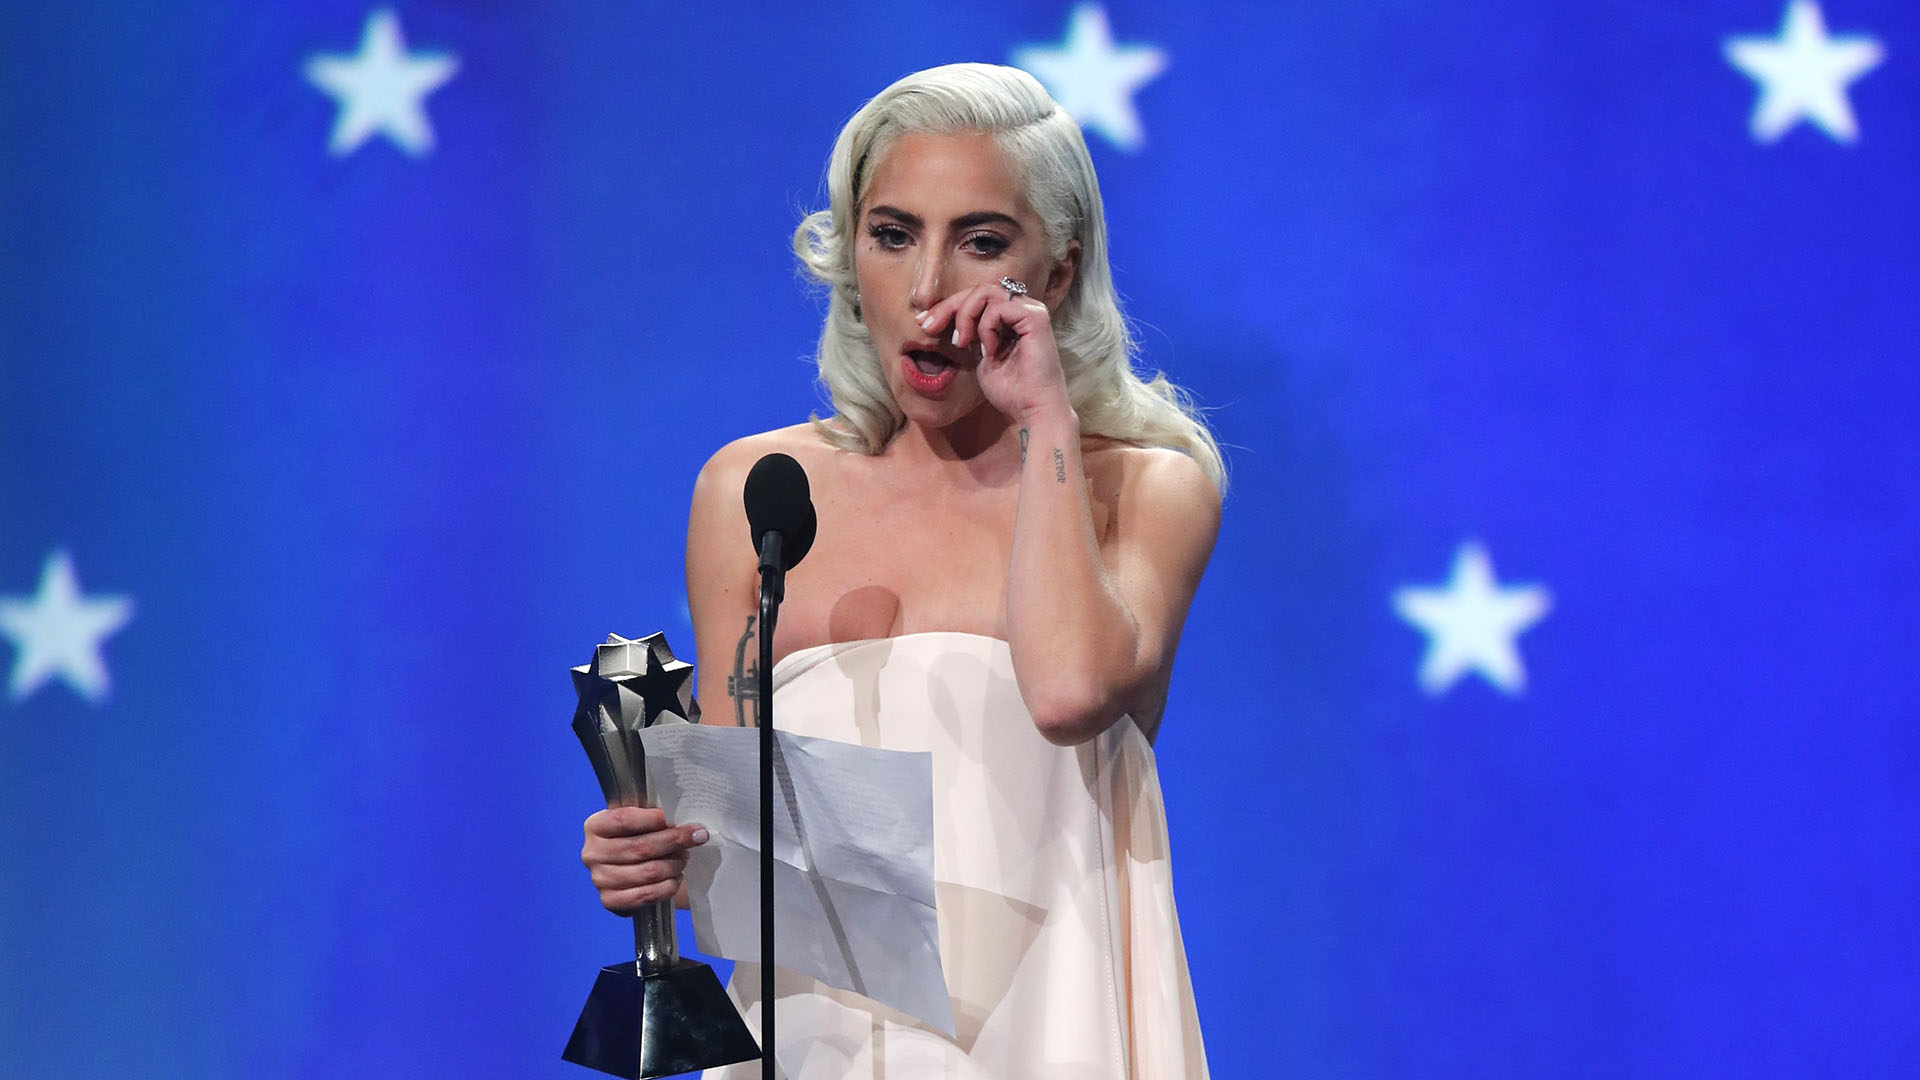 Lady Gaga siempre quiso ser actriz, pero decidió darse a conocer primero como cantante (Foto: REUTERS/Mike Blake)